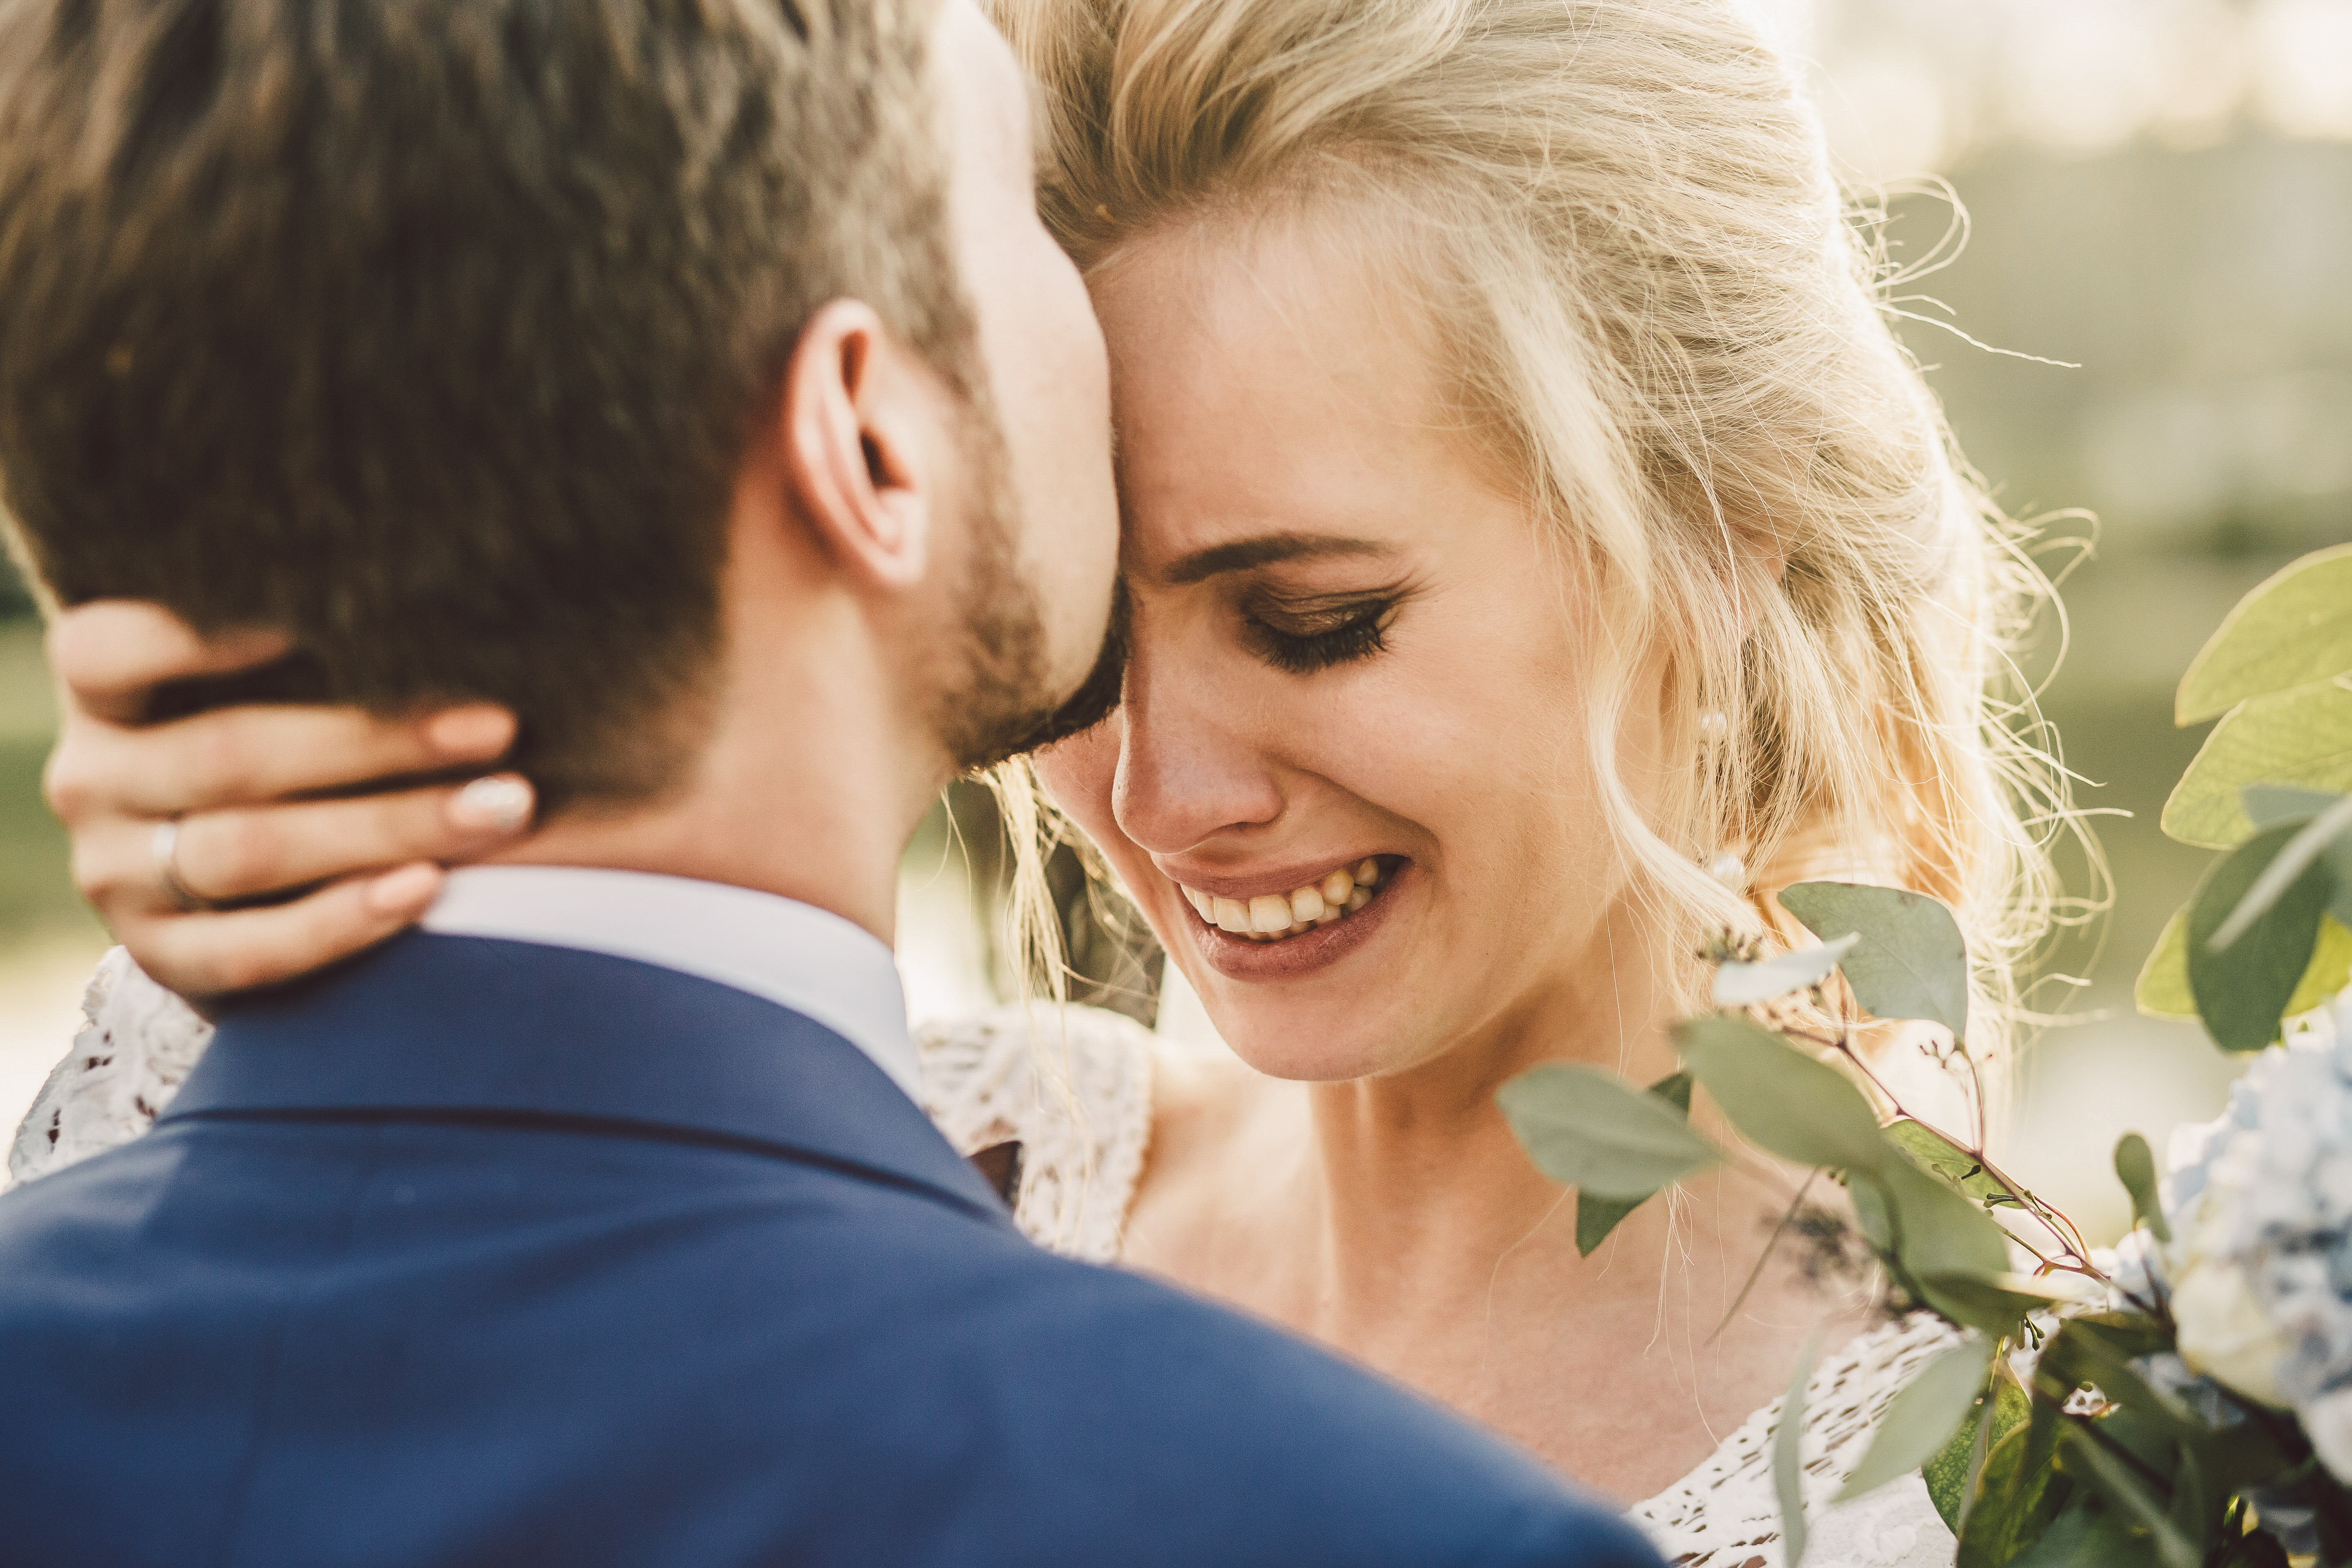 Ein Bräutigam küsst seine Braut auf die Stirn, während sie weint | Quelle: Shutterstock